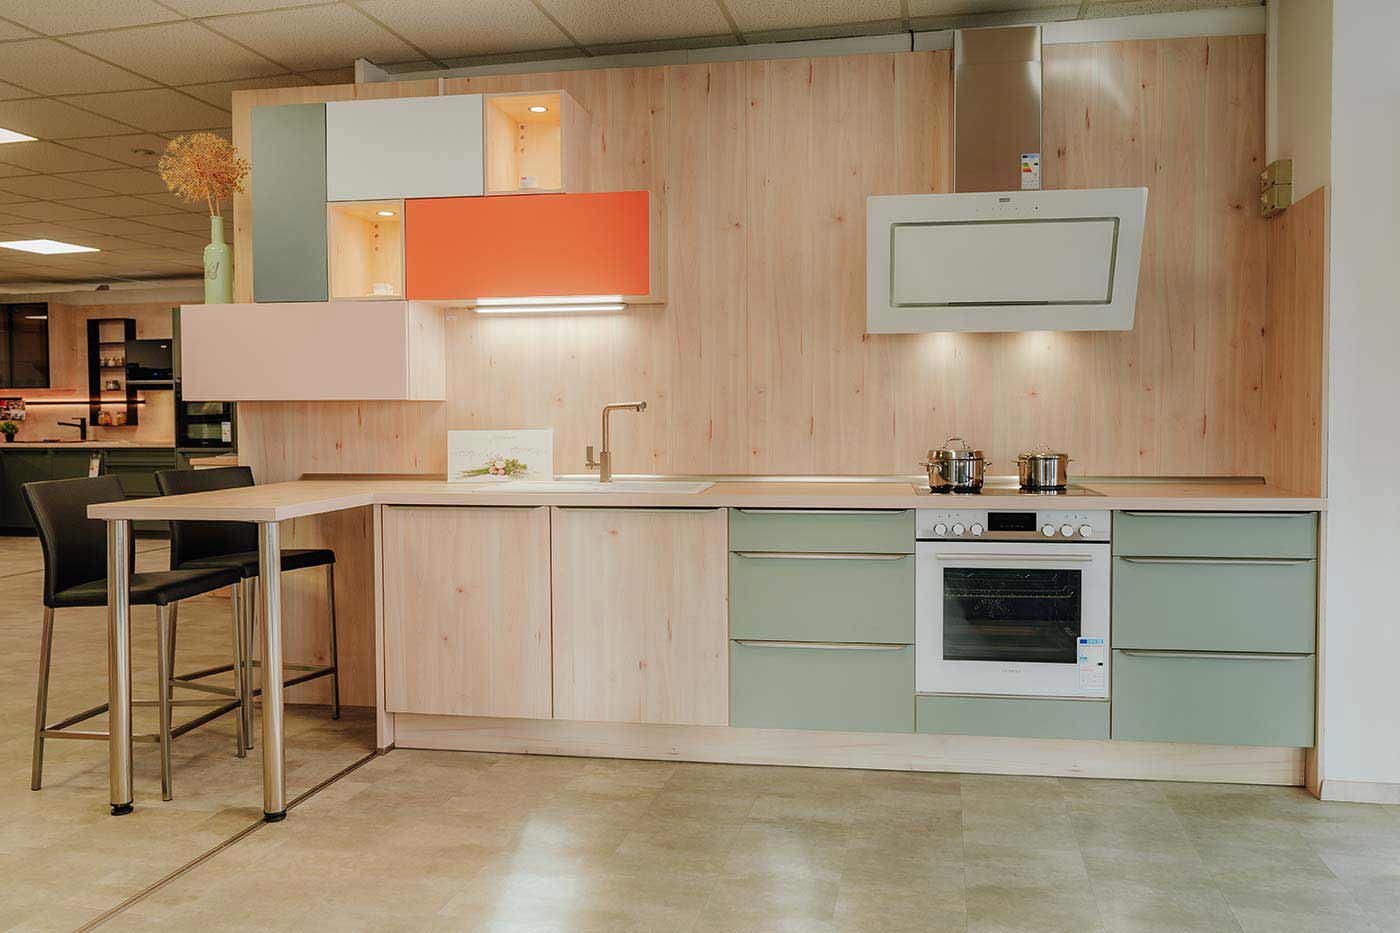 Küche aus Holz mit Fronten in orange & mintgrün und weißer Dunstabzugshaube und Backofen in der Küchenausstellung Matthäs